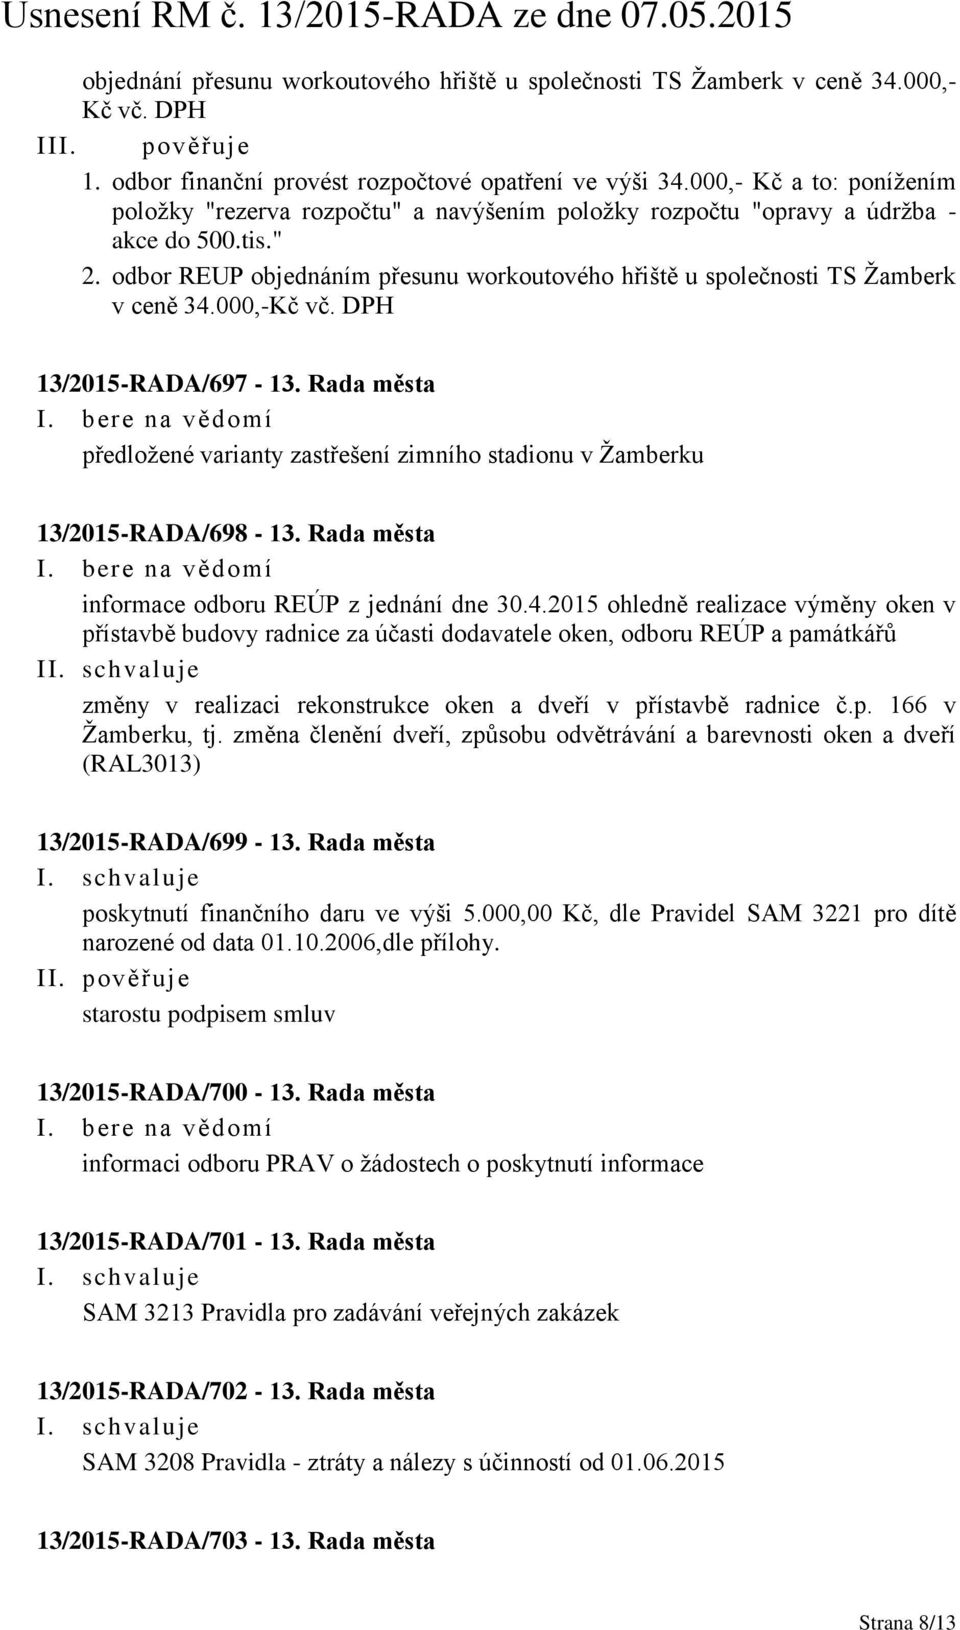 odbor REUP objednáním přesunu workoutového hřiště u společnosti TS Žamberk v ceně 34.000,-Kč vč. DPH 13/2015-RADA/697-13.